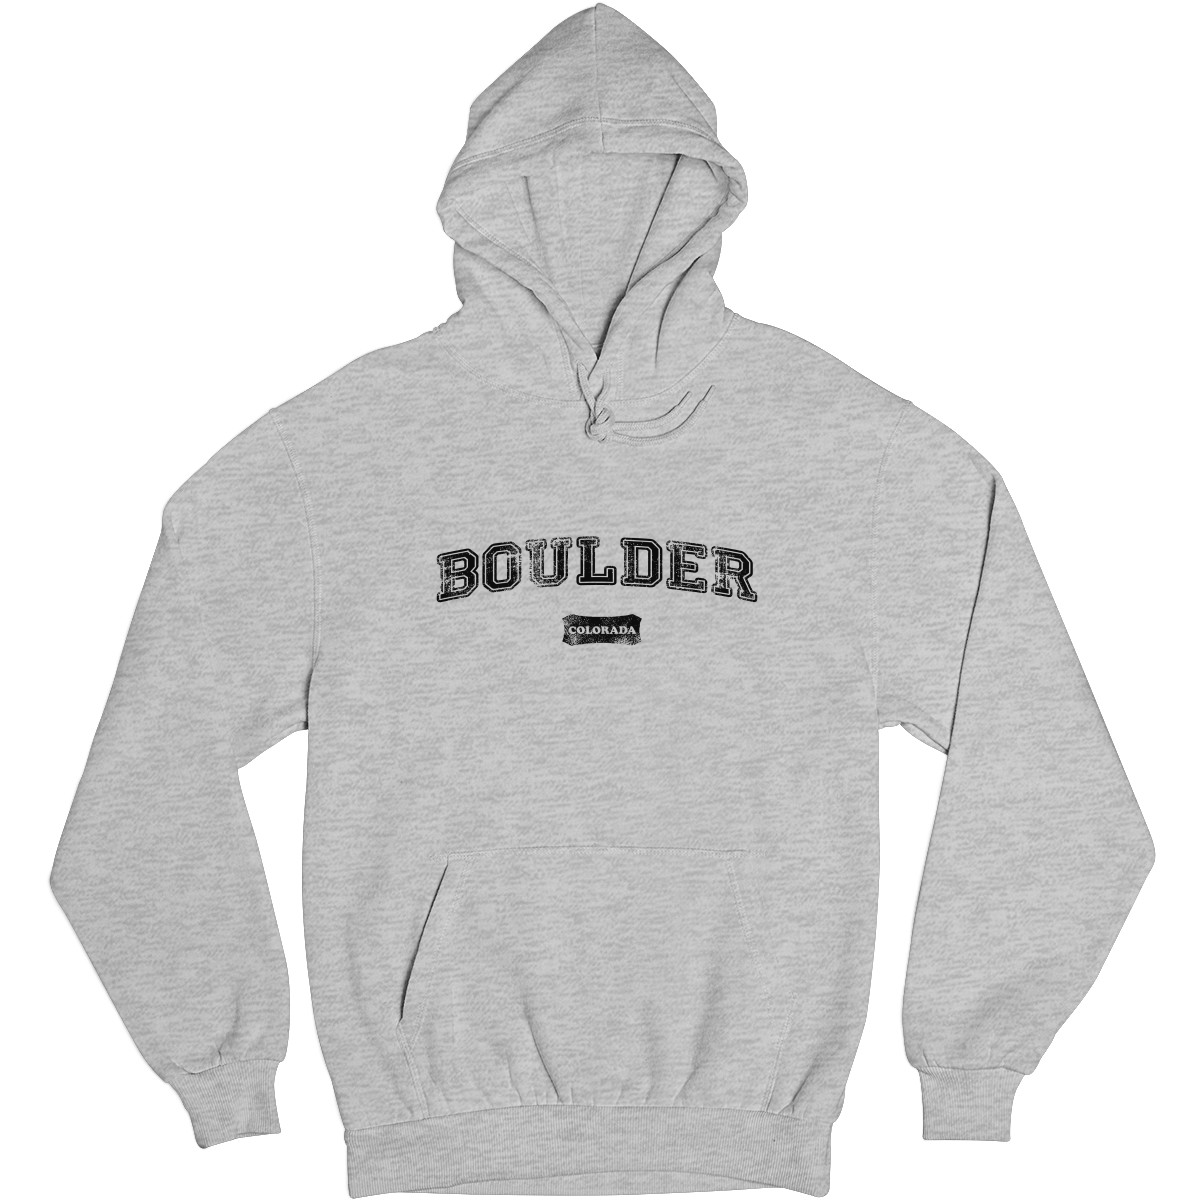 Boulder Colorado Represent Unisex Hoodie | Gray